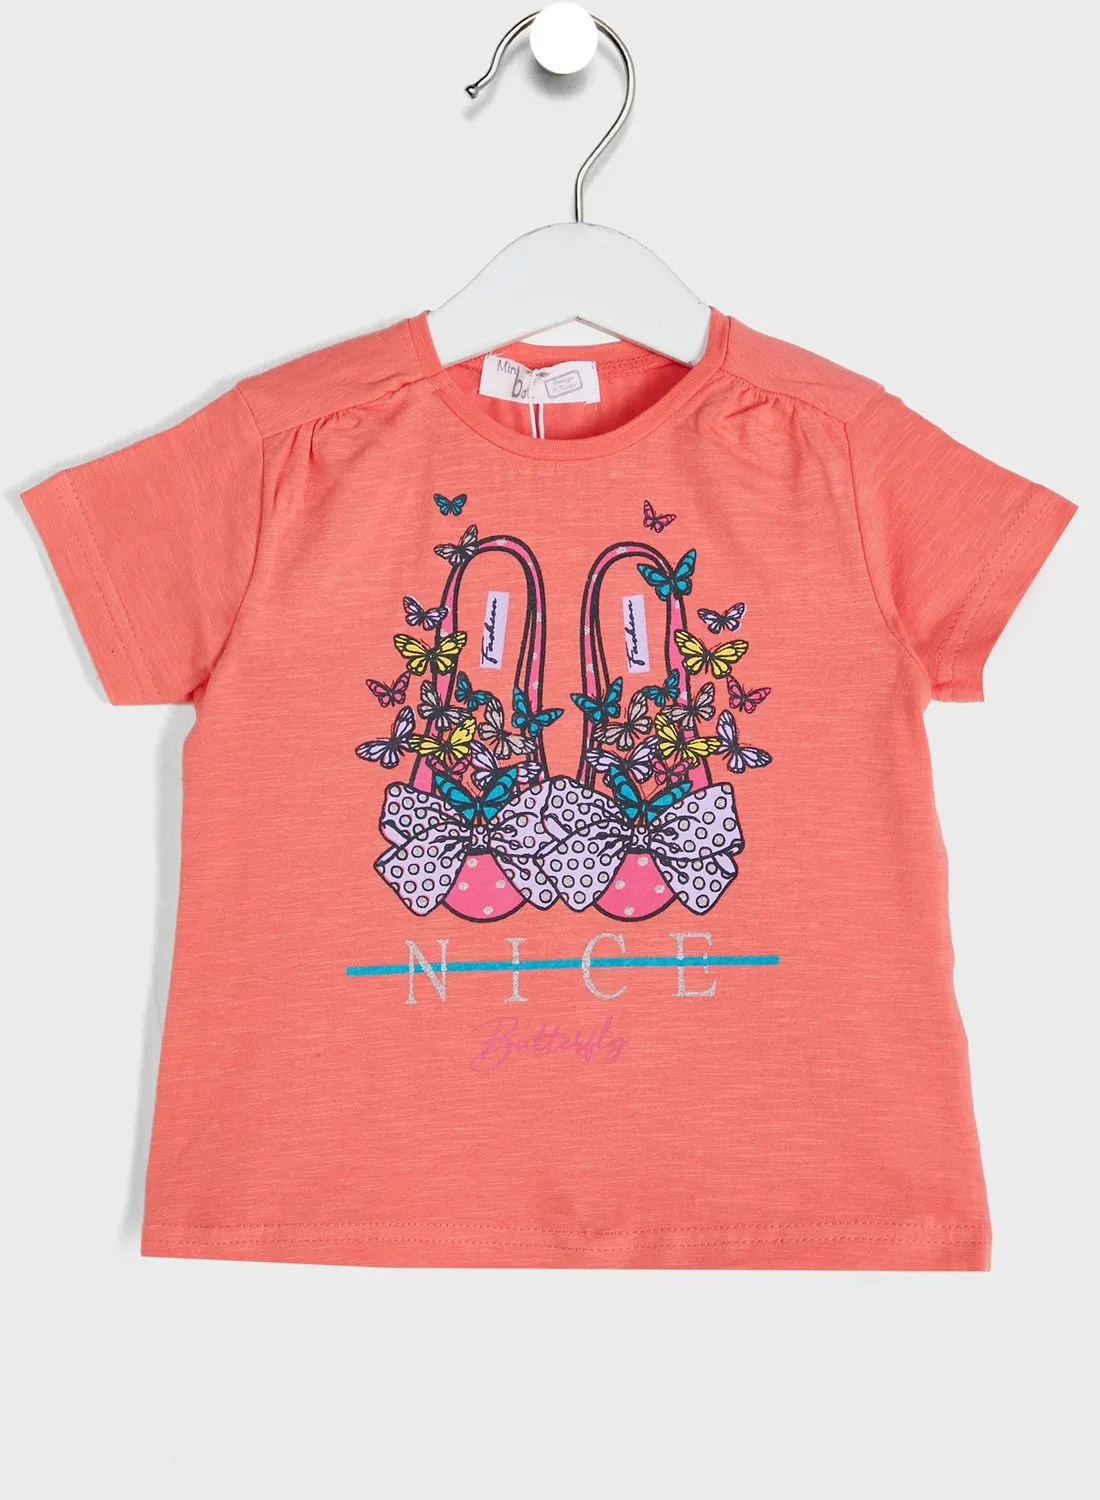 Babybol Kids Graphic T-Shirt